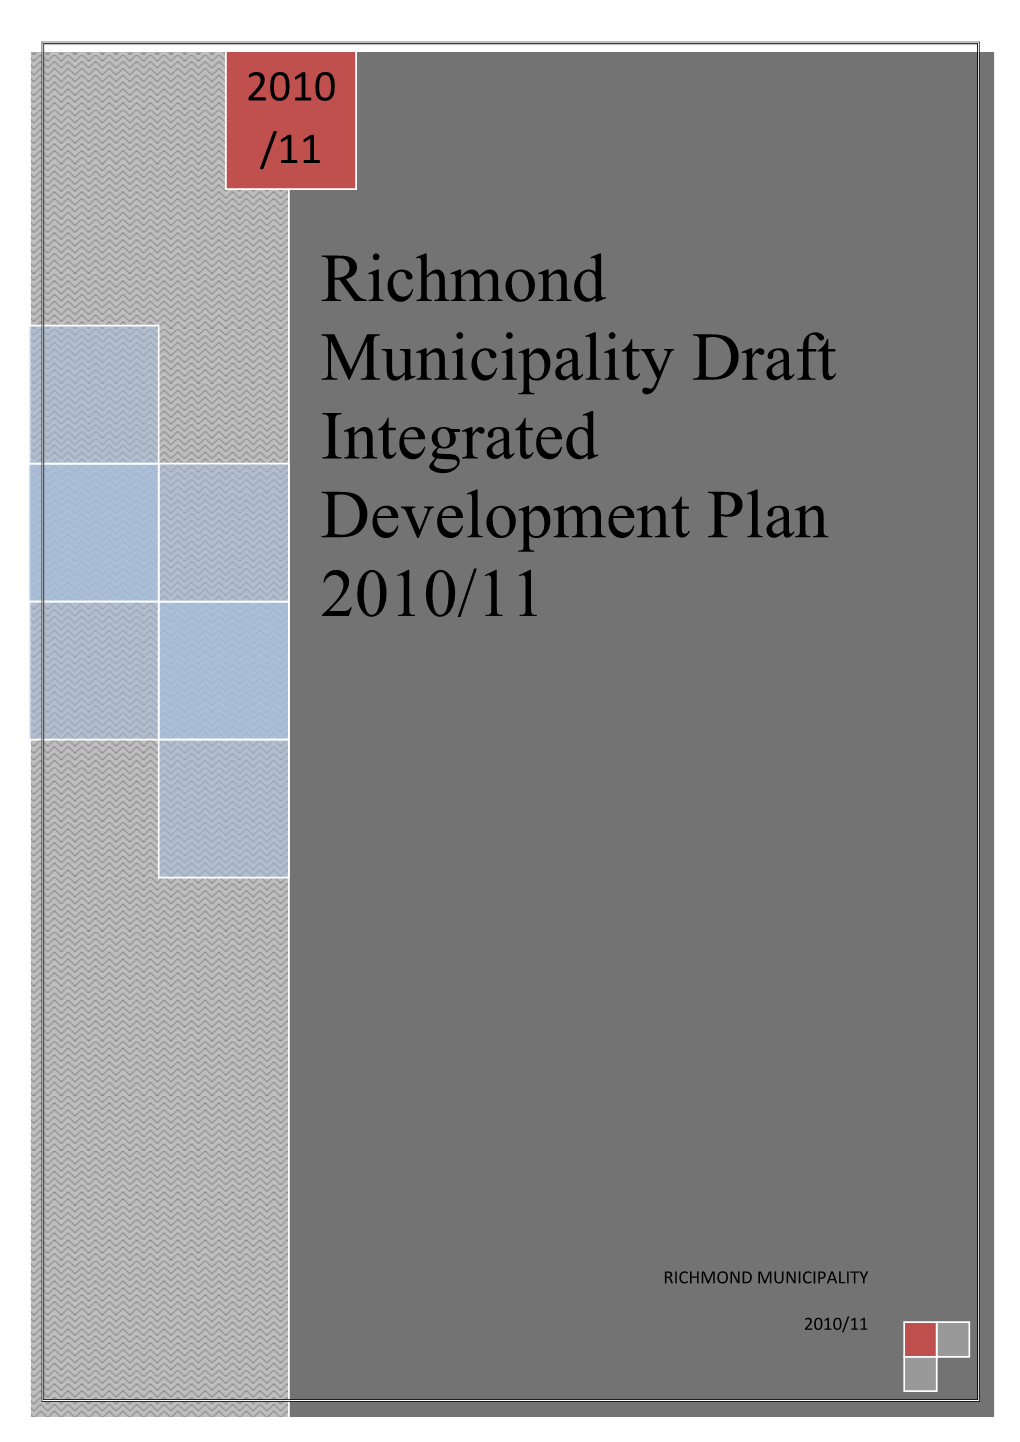 Richmond Municipality Draft Integrated Development Plan 2010/11